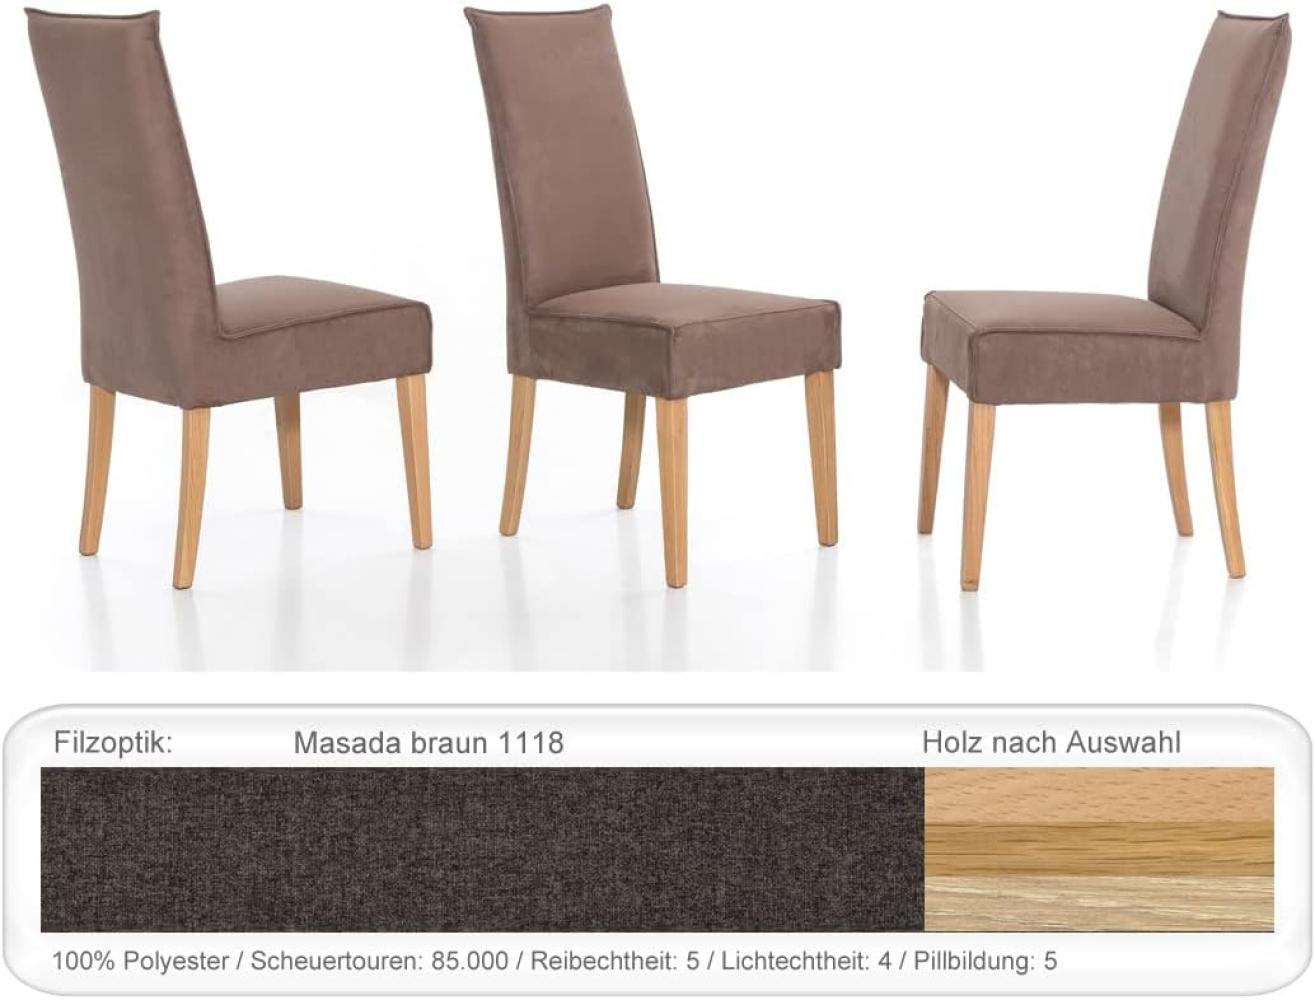 4x Polsterstuhl Kiana Varianten Esszimmerstuhl Küchenstuhl Massivholzstuhl Eiche natur lackiert, Masada braun Bild 1